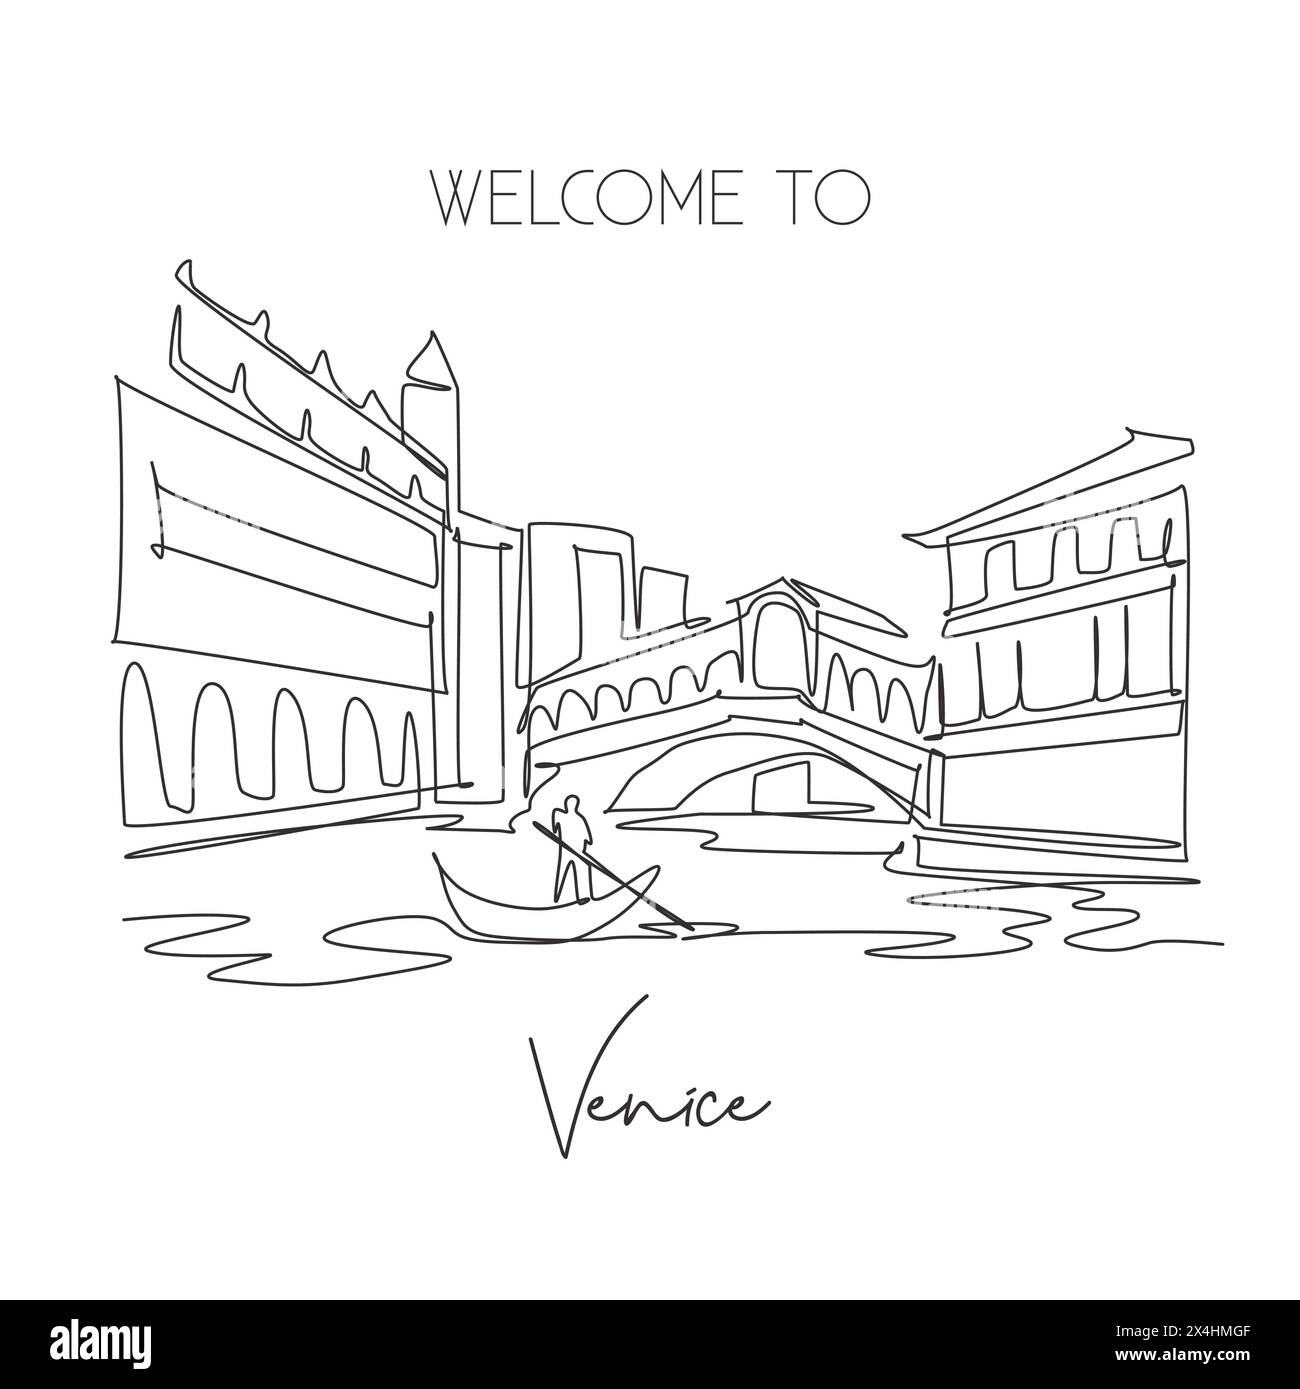 Eine einzige Linie, die das Wahrzeichen der Rialto-Brücke darstellt. Weltberühmter ikonischer Kanal in Venedig Italien. Tourismus Reise Postkarte Wohnwand Dekor Poster Print Conep Stock Vektor